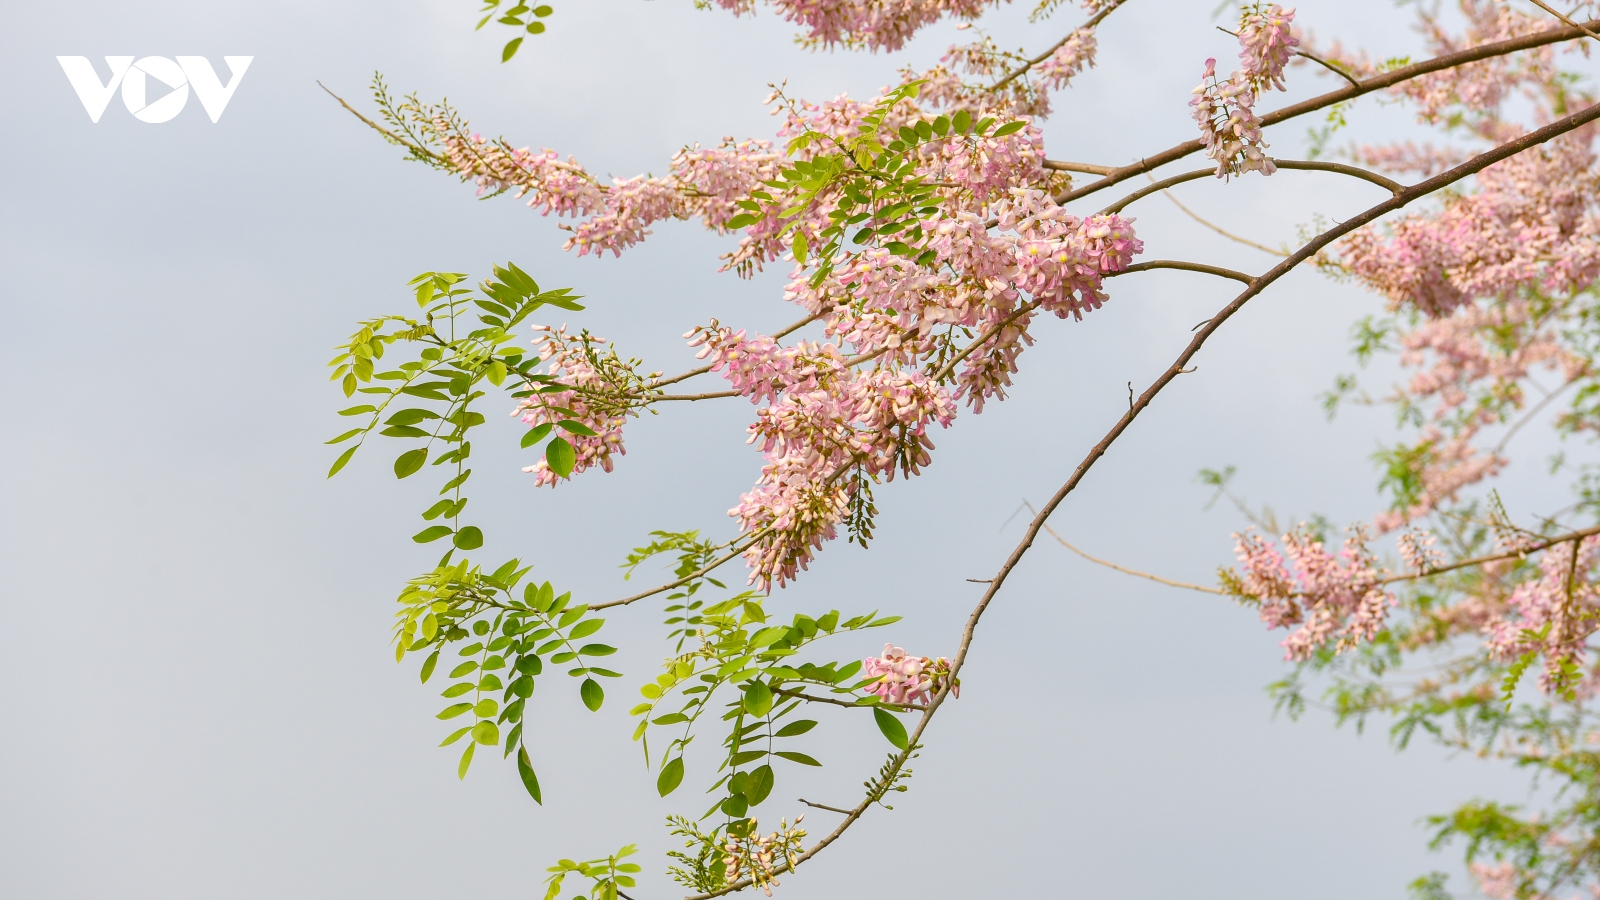 Ngắm rừng hoa đỗ mai hồng rực thu hút giới trẻ ở Bắc Ninh